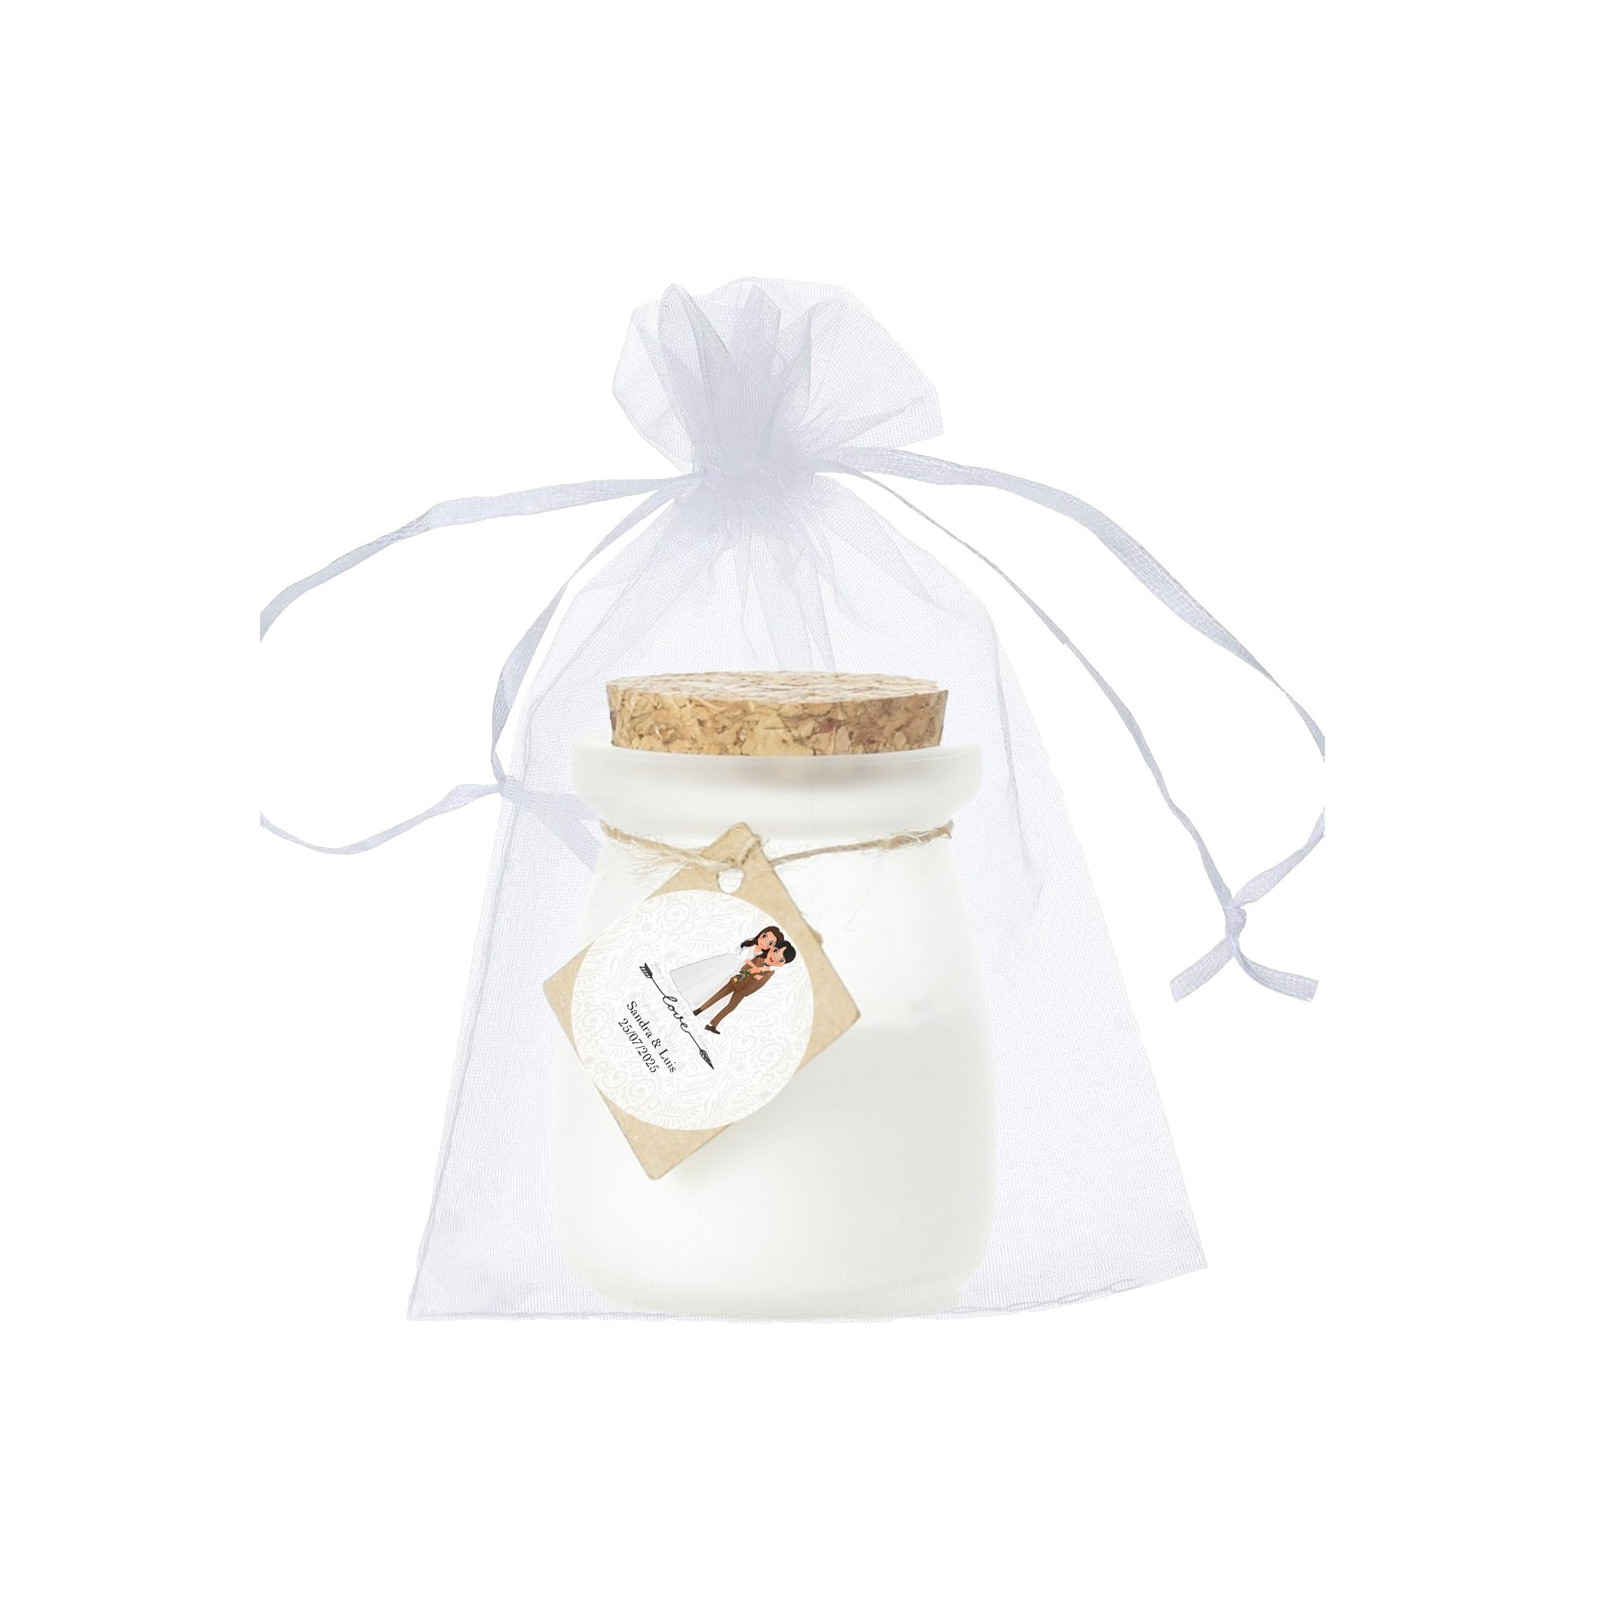 Candela profumata alla vaniglia personalizzata con adesivo sposi in sacchetto di organza bianco